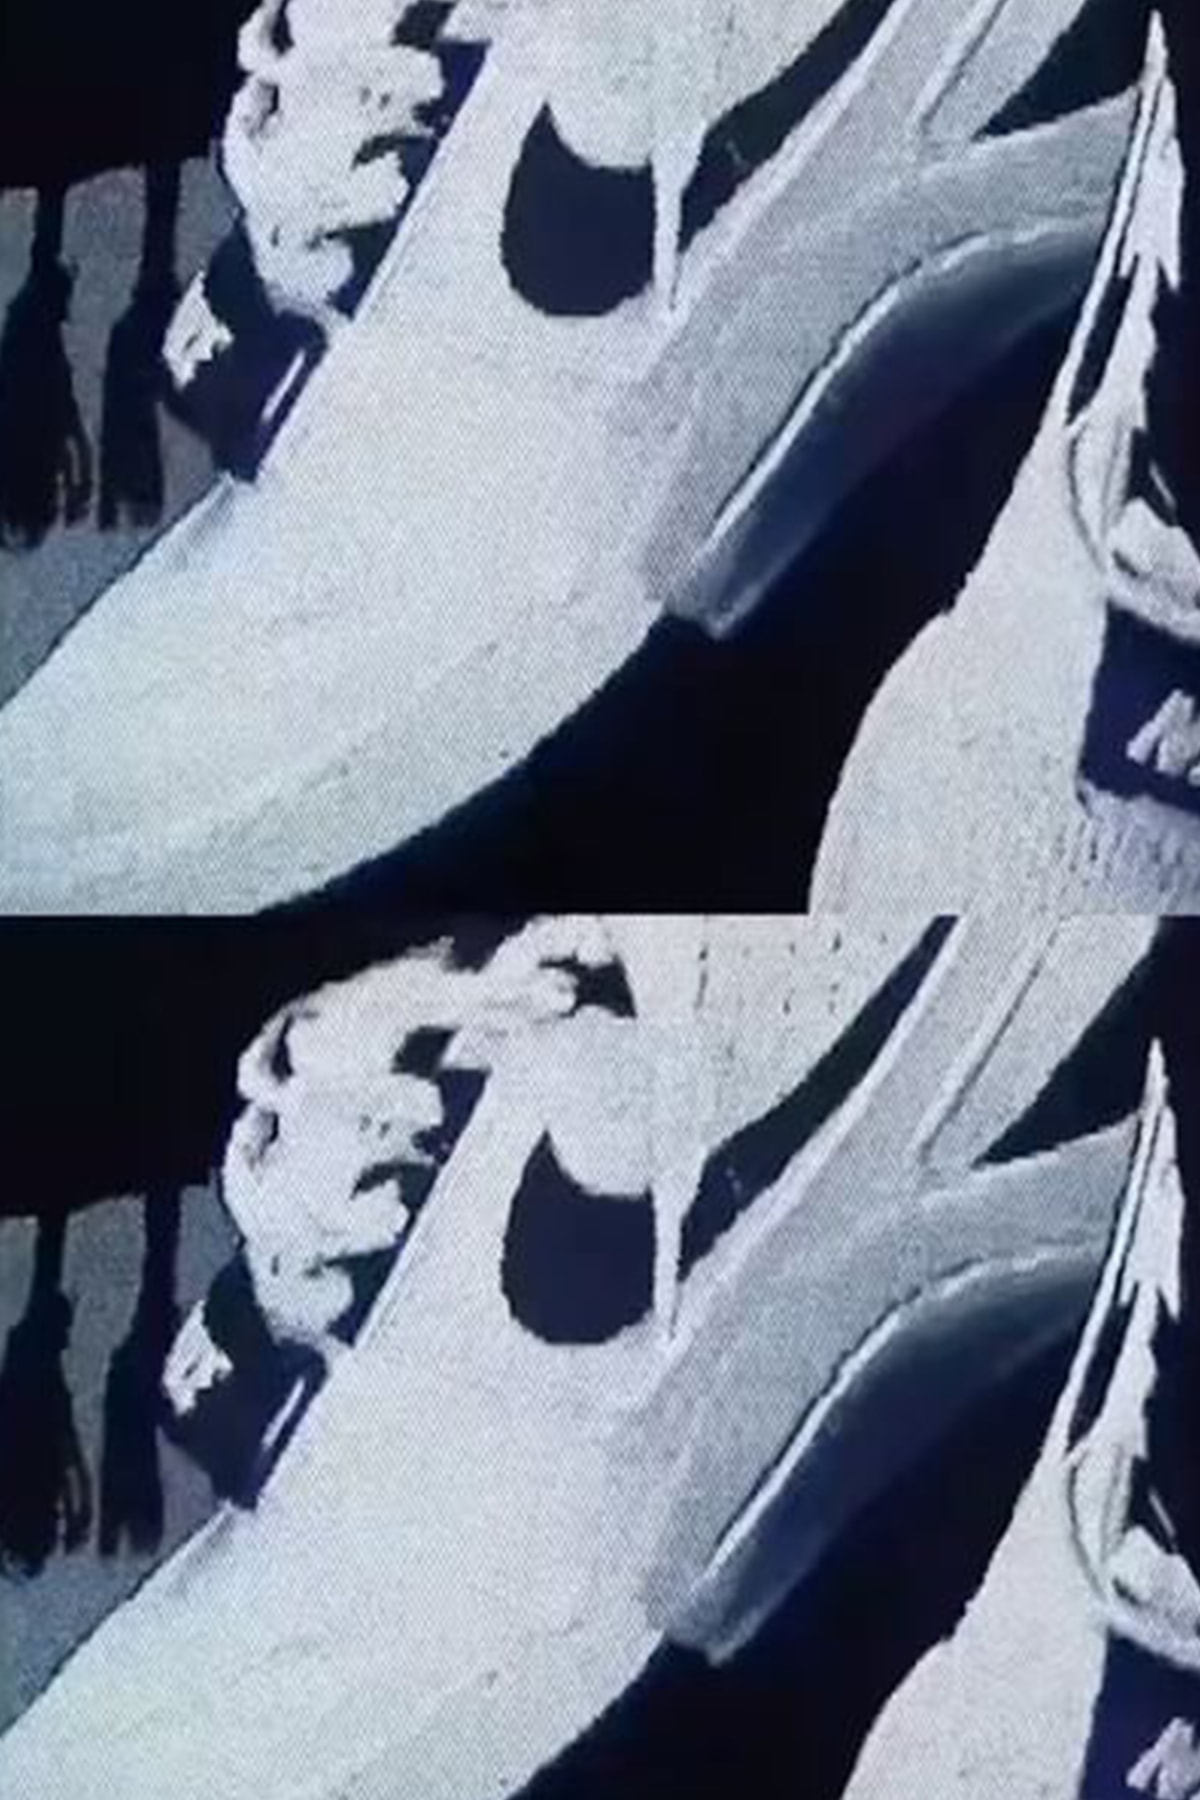 ビリー・アイリッシュ x ナイキエアアルファフォース88の国内発売情報が解禁 Billie Eilish x Nike Air Alpha Force 88 “Fire Red and White” & “Black and White” release info